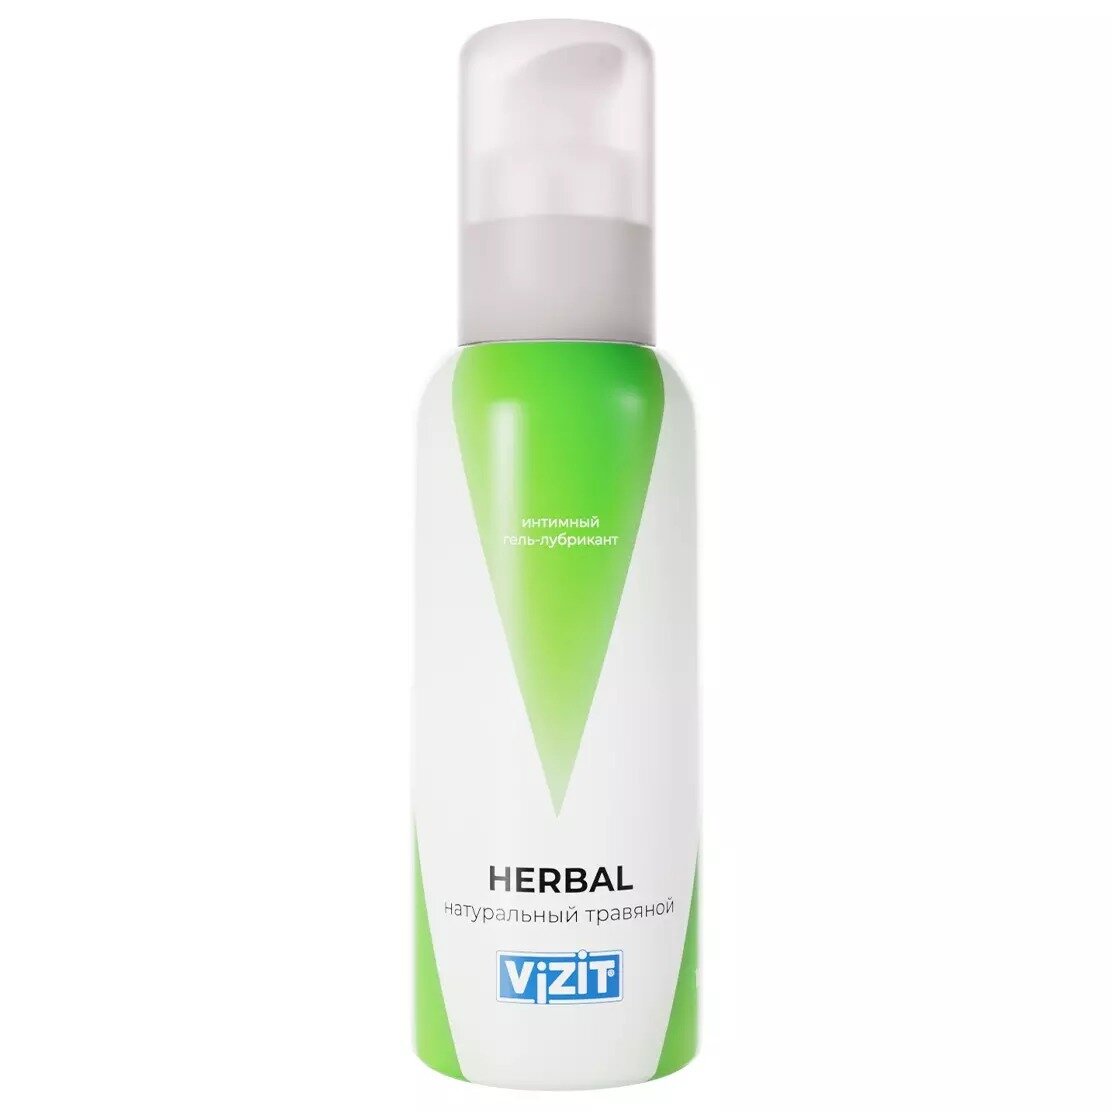 Гель-смазка Vizit Herbal натуральный травяной 100 мл